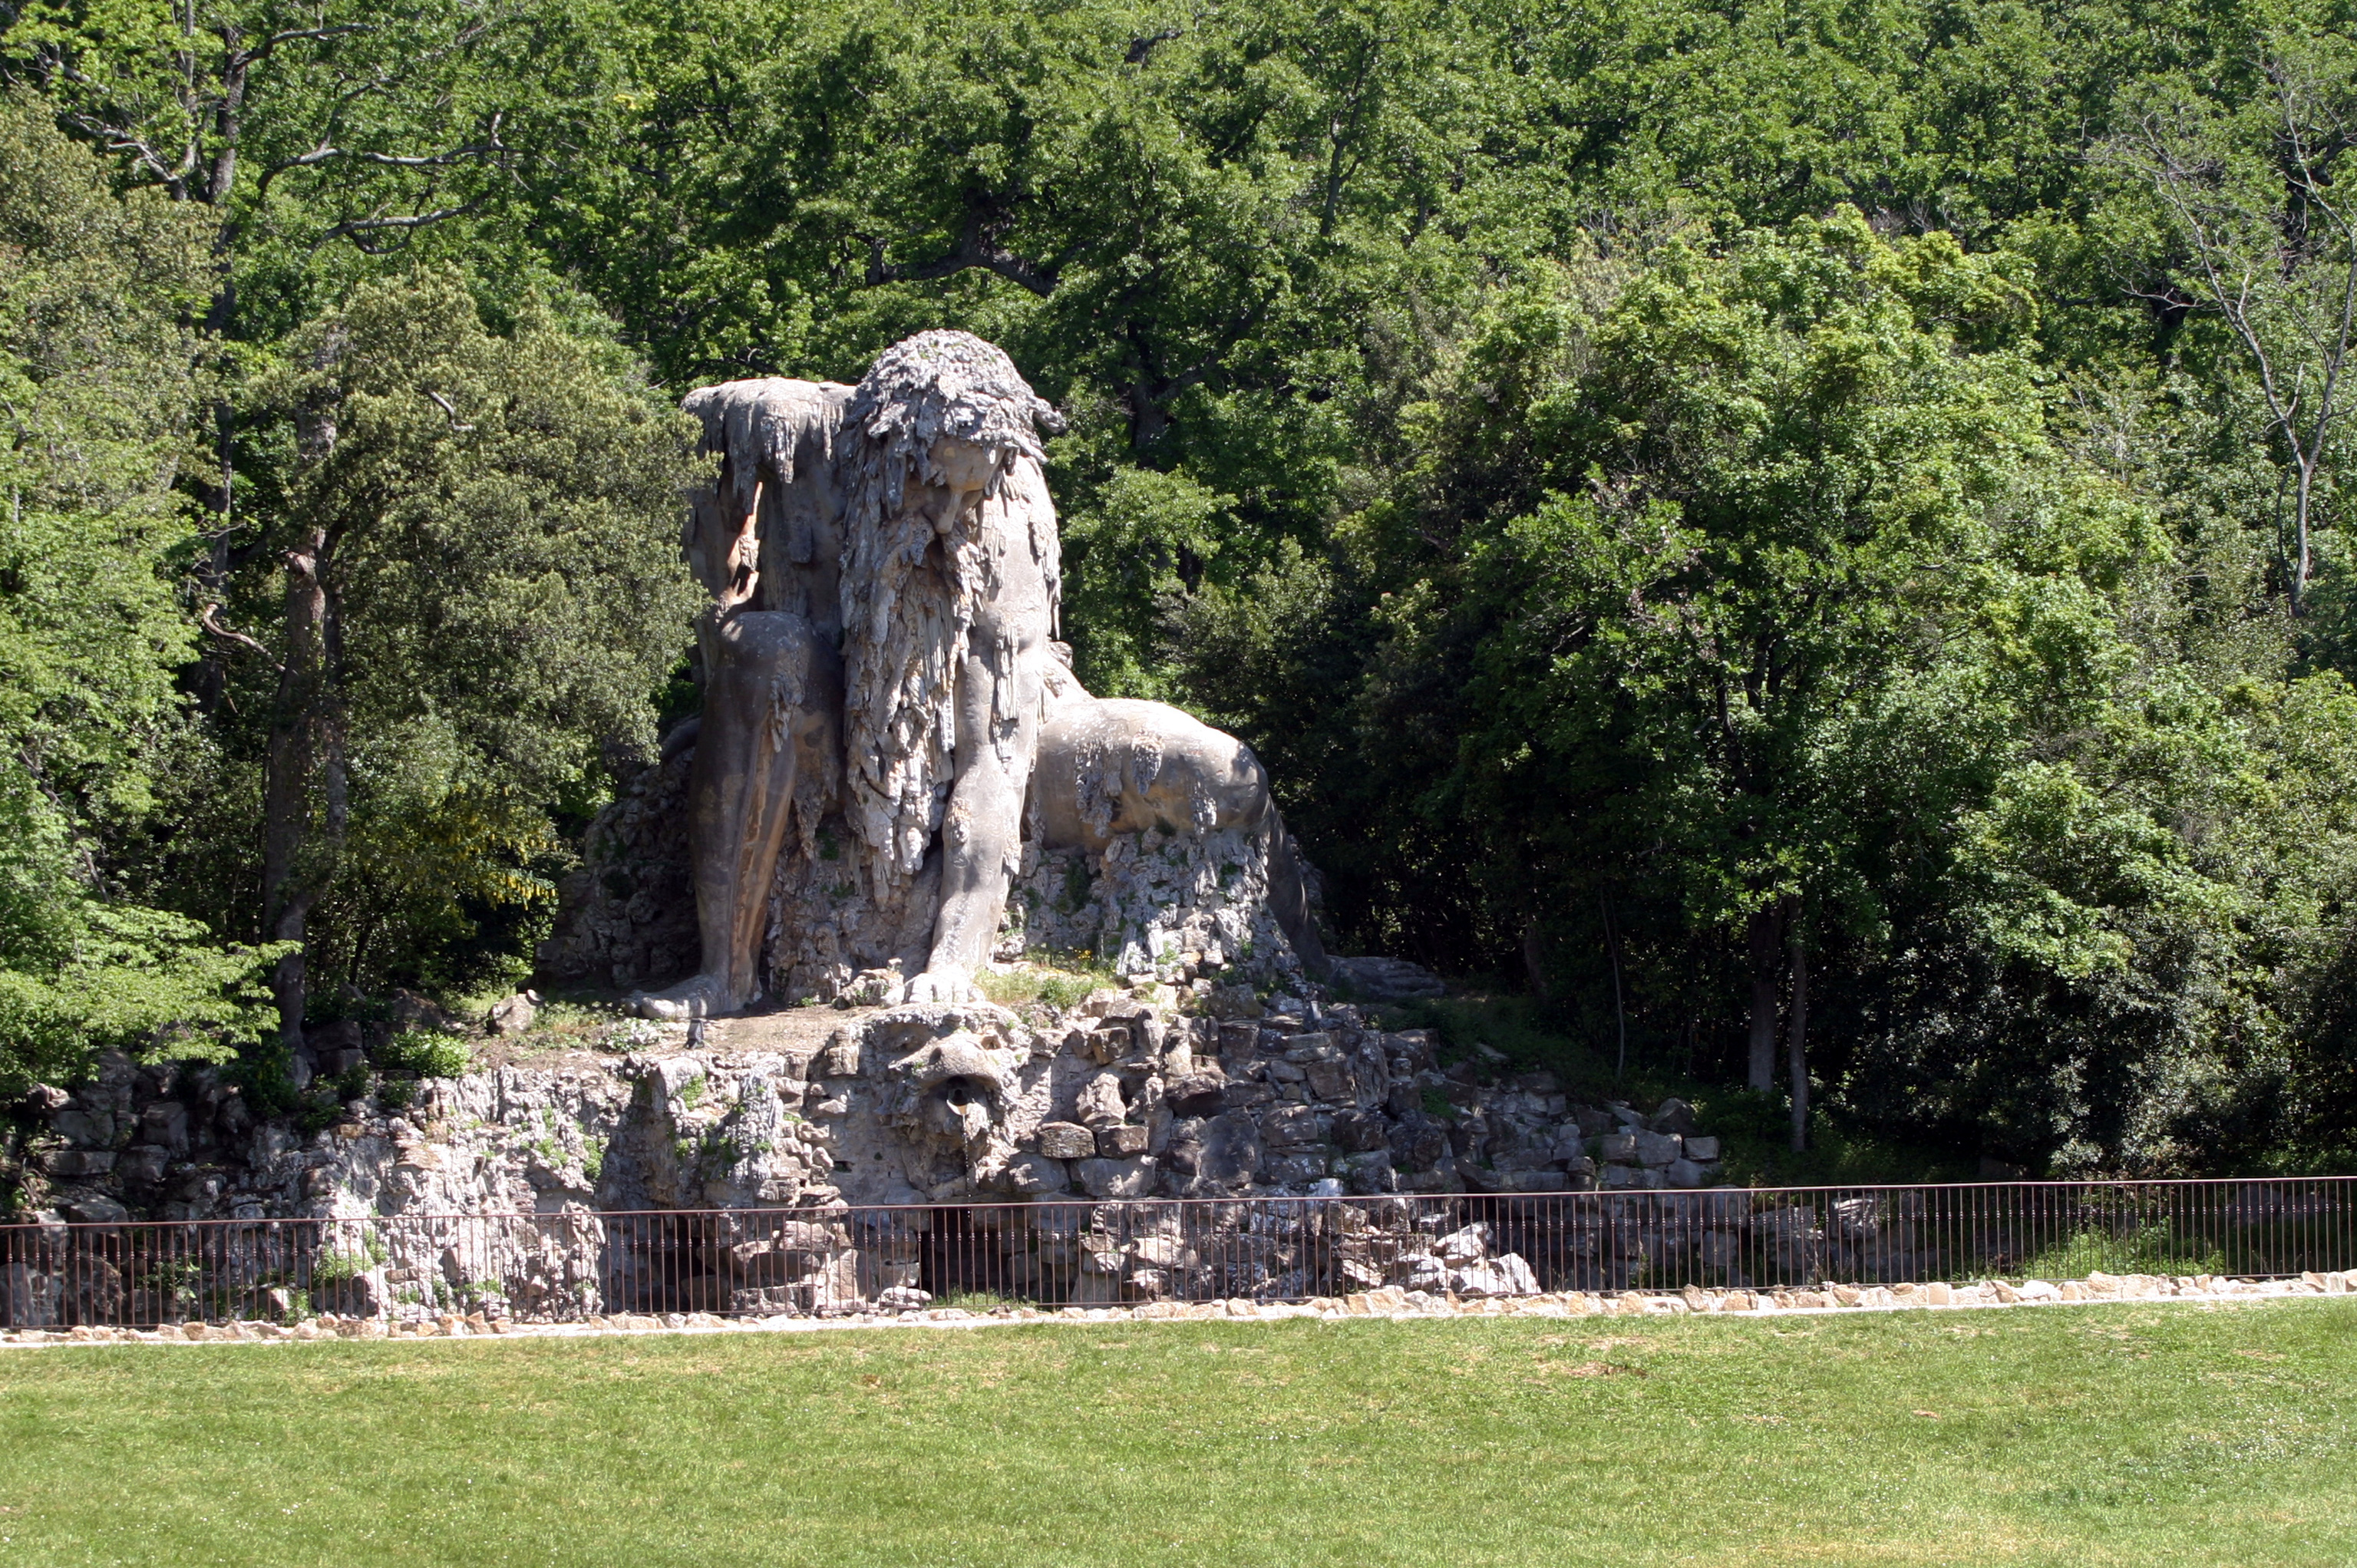 Il Colosso dell'Appennino nel Parco di Villa Demidoff